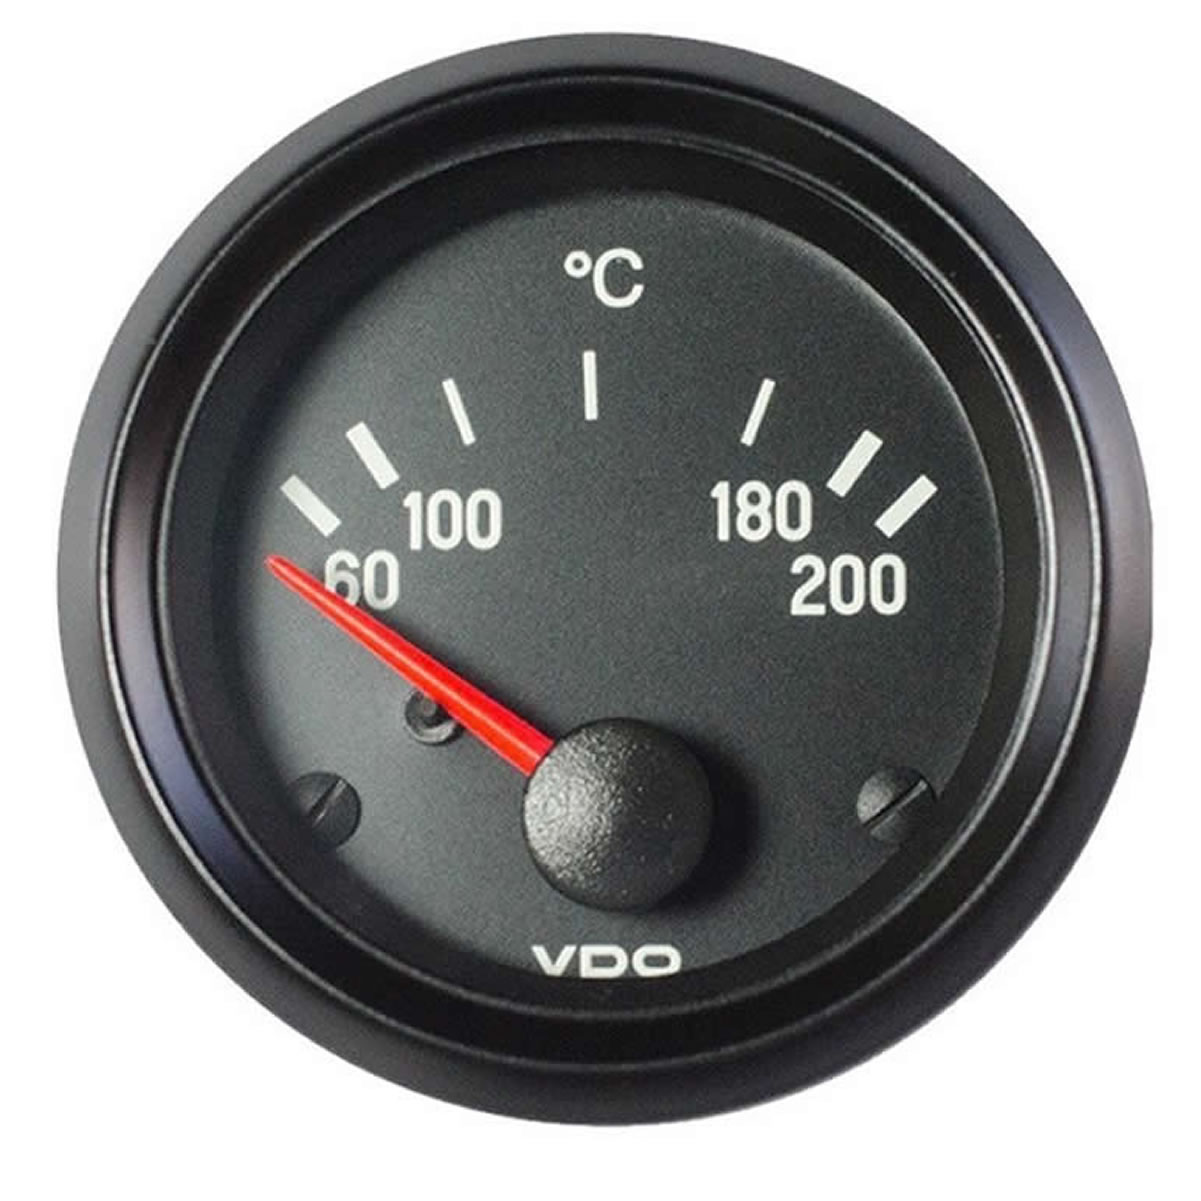 VDO Oil temperature 200C Gauge